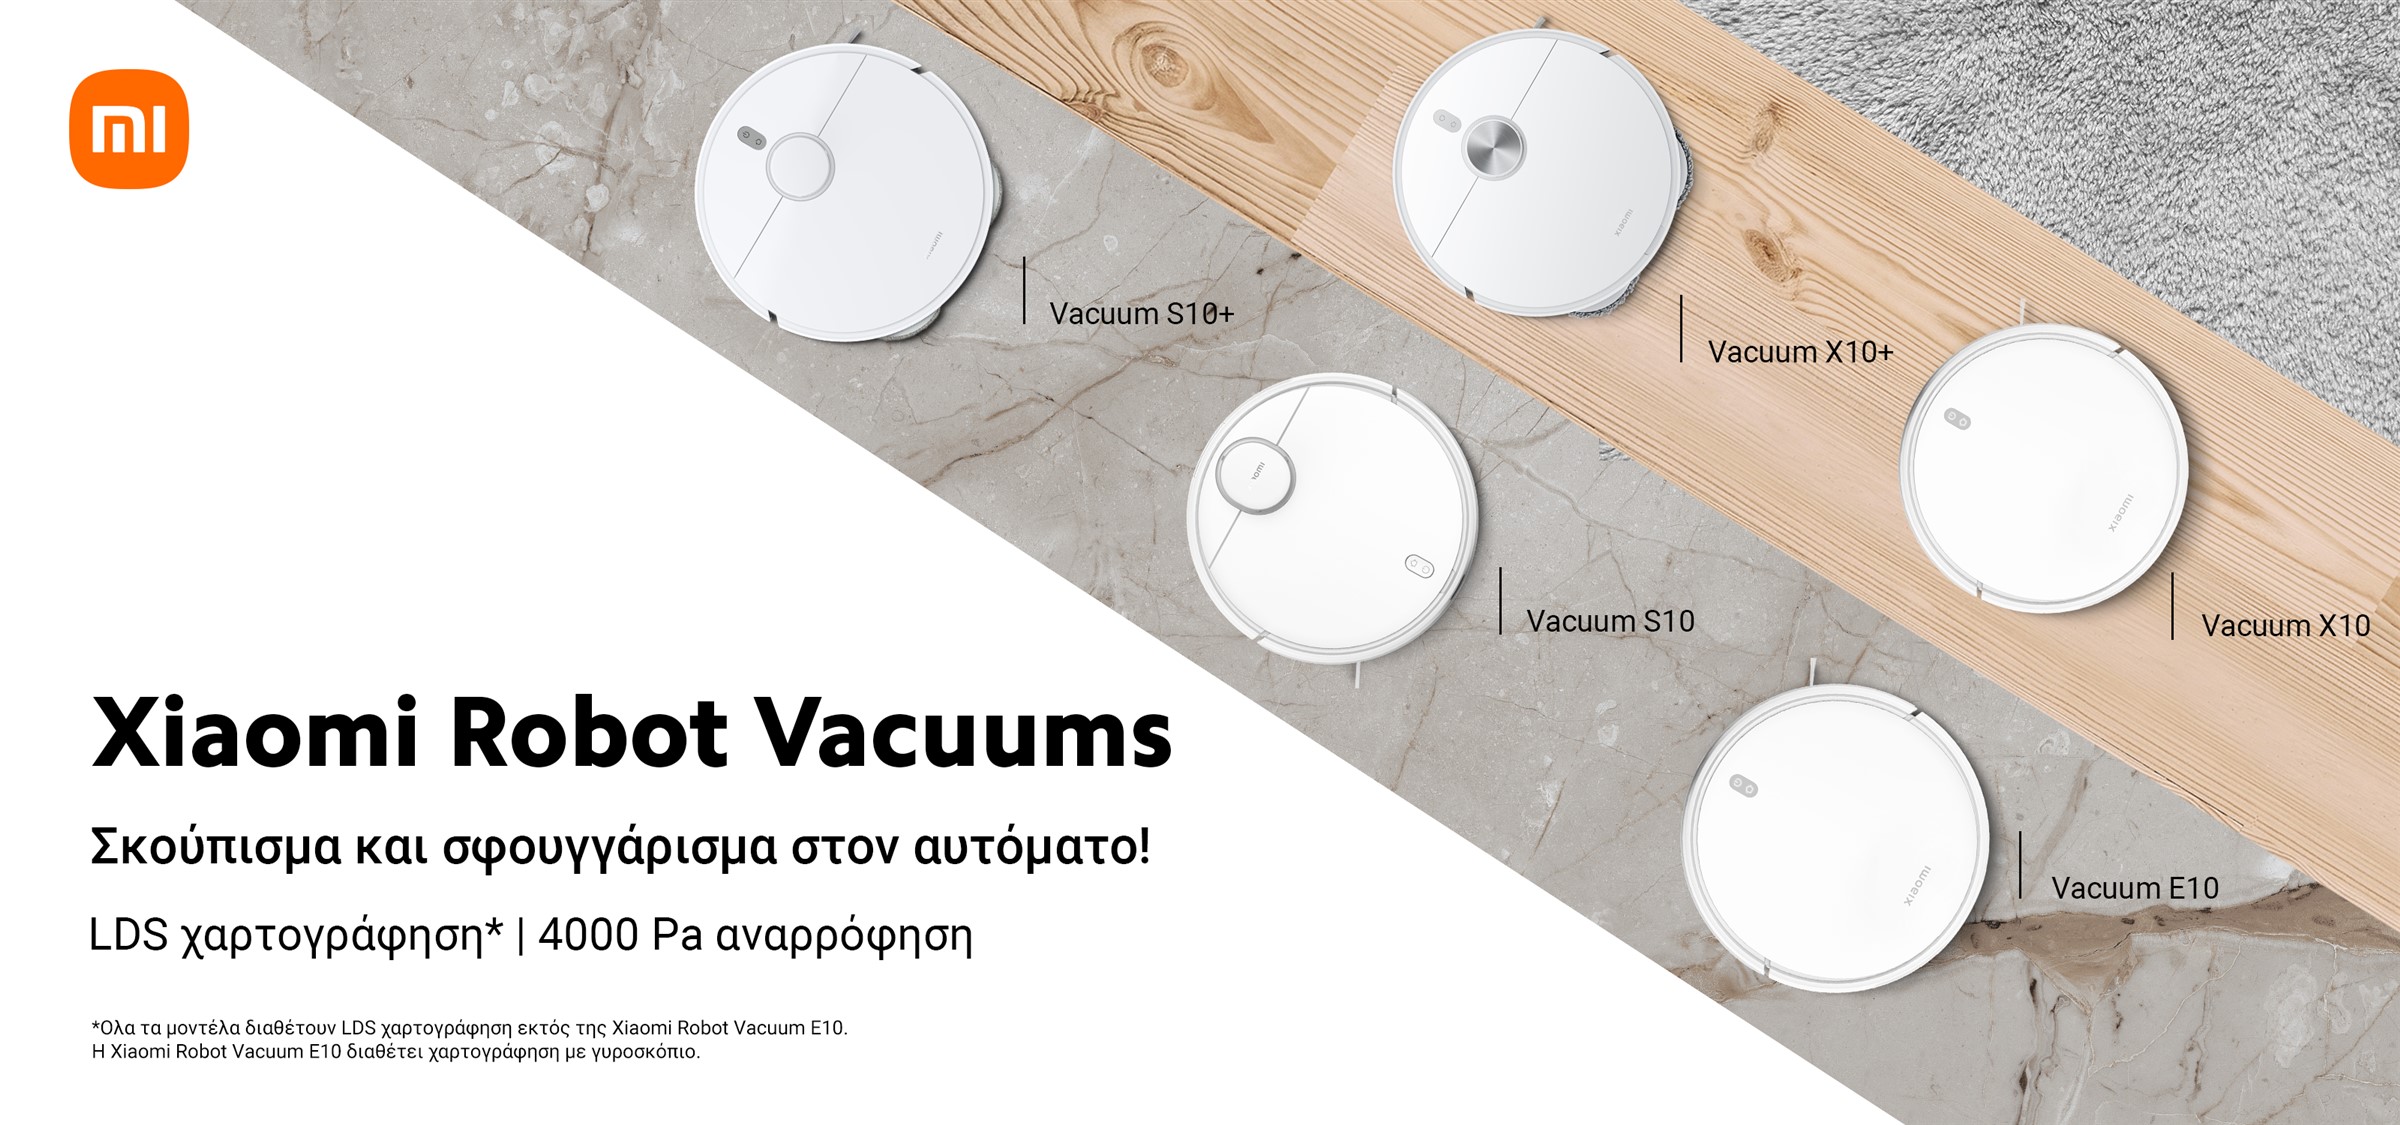 , Νέες σειρές Robot Vacuum S και X από τη Xiaomi: Διαθεσιμότητα, τιμές